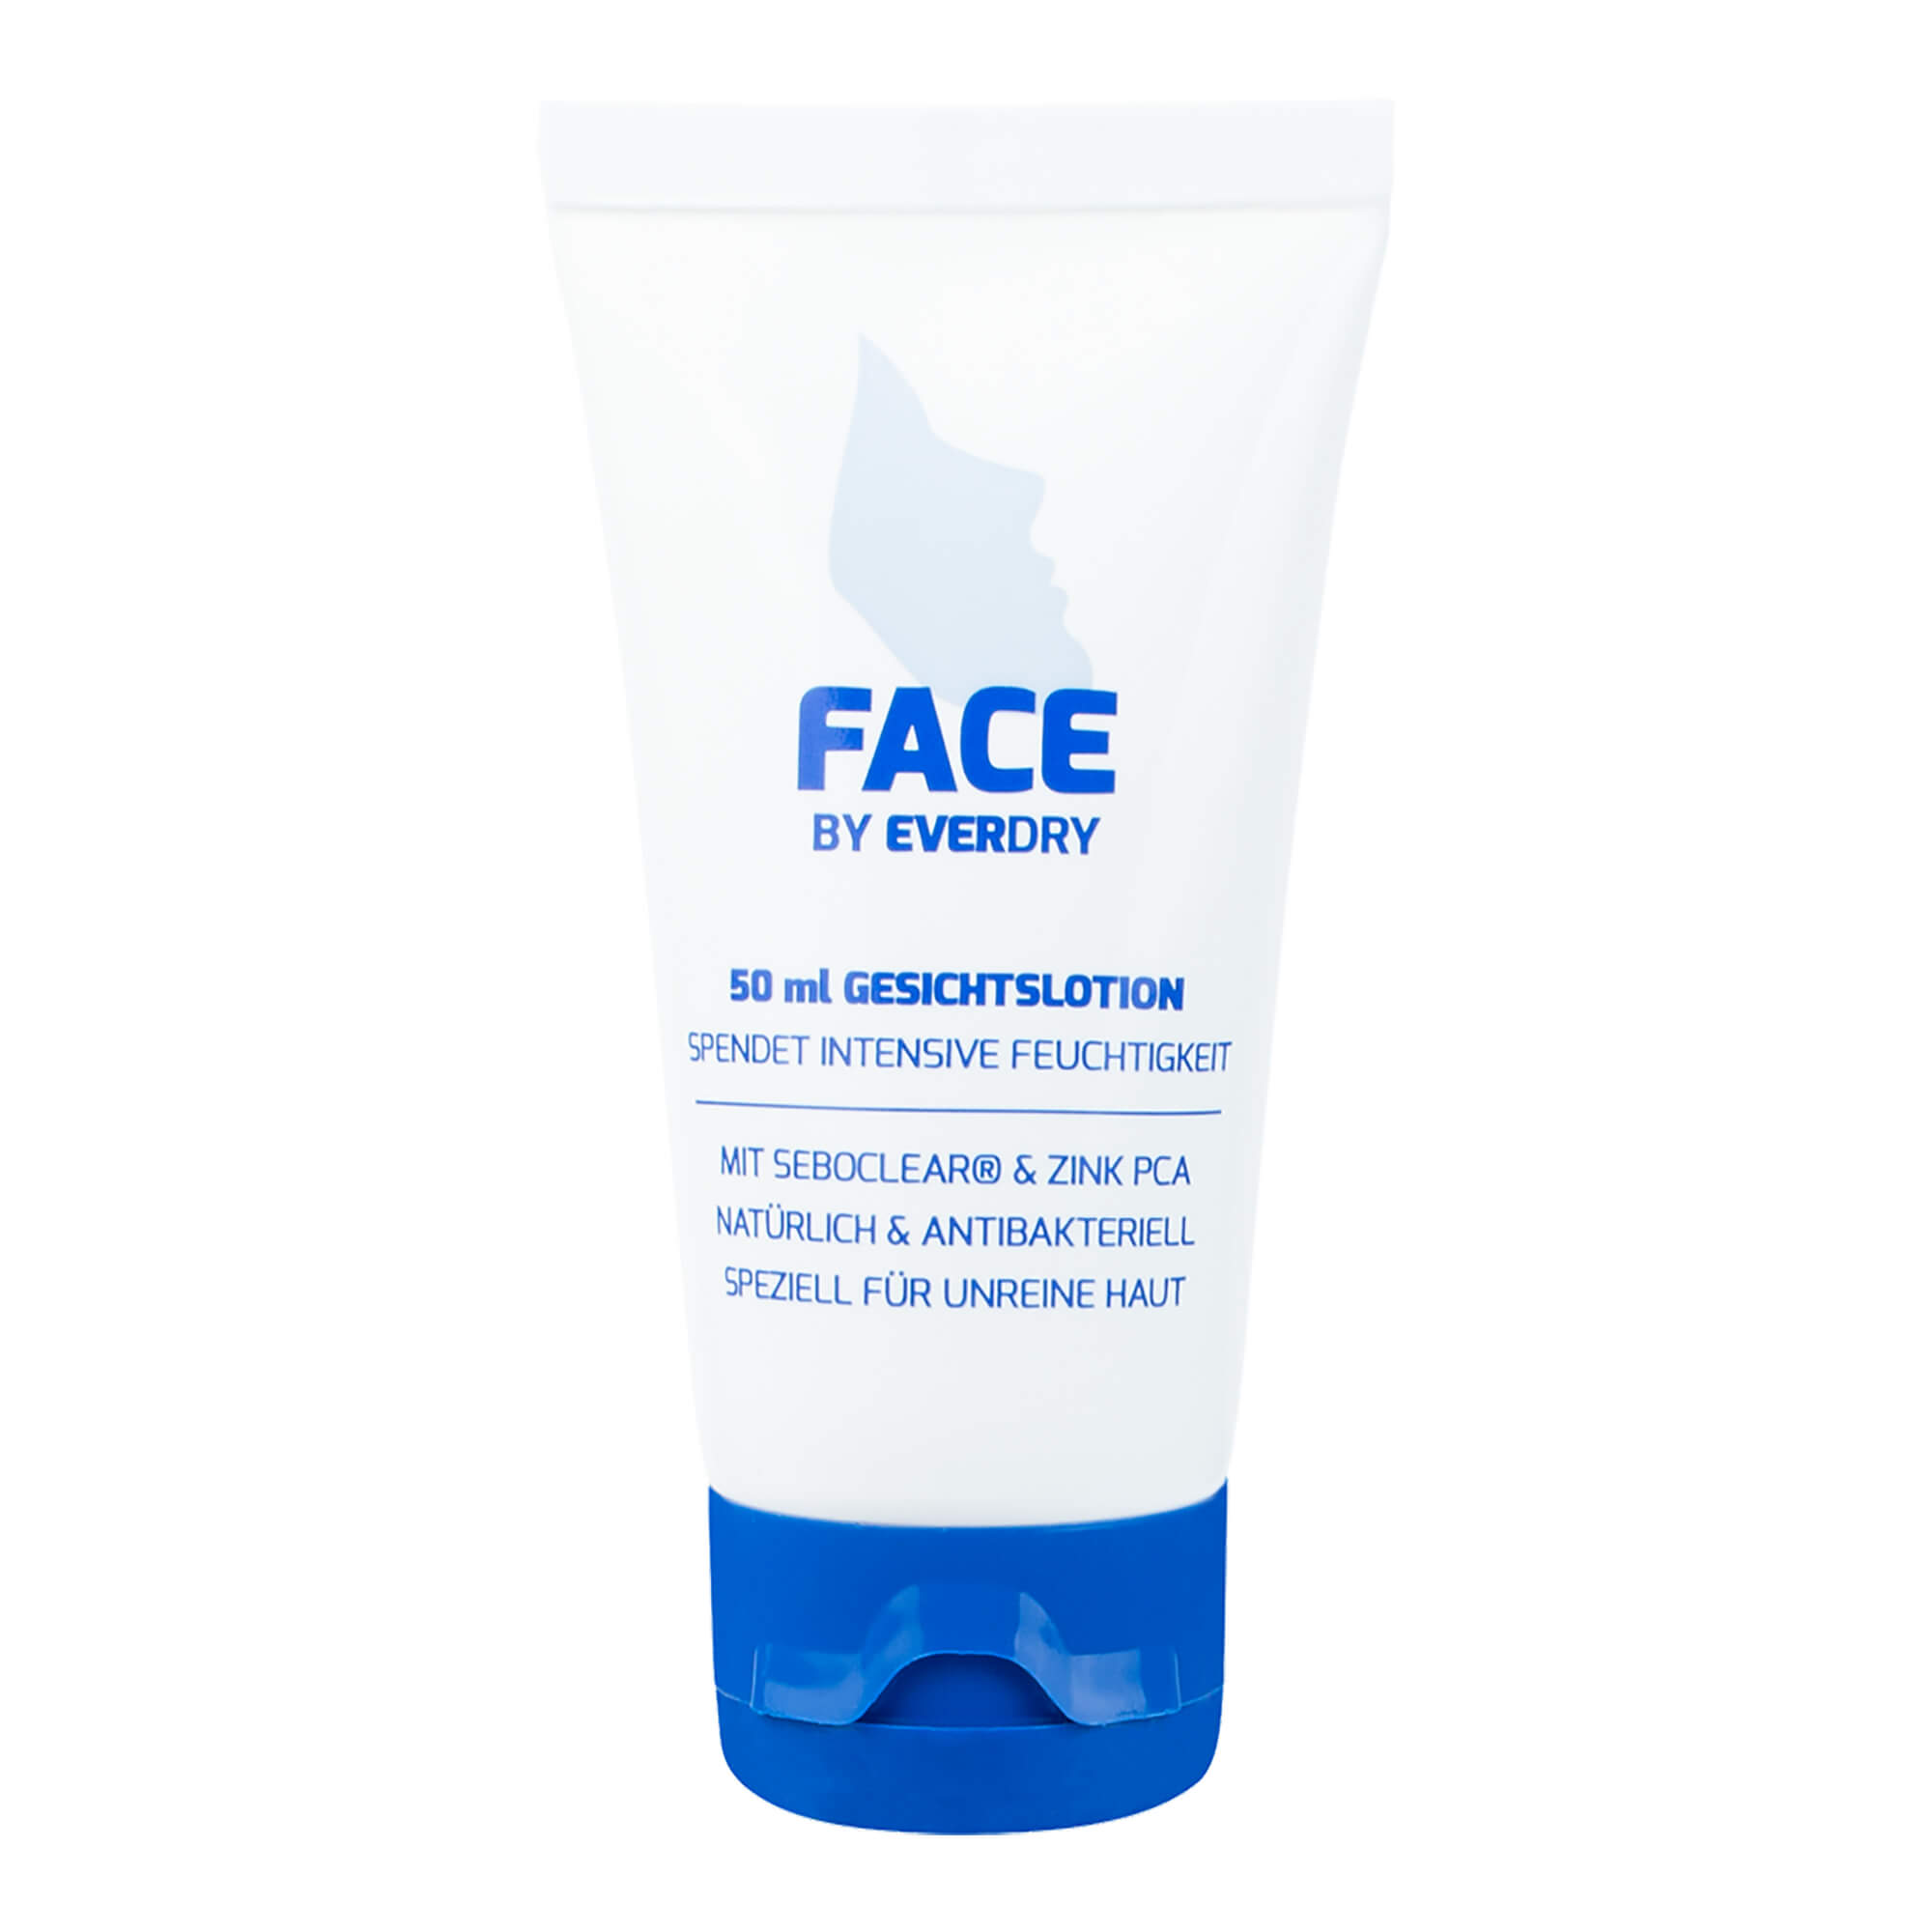 Gesichtspflege zur Regeneration gereizter Haut. ldeal bei schwitziger Haut & Hautunreinheiten.